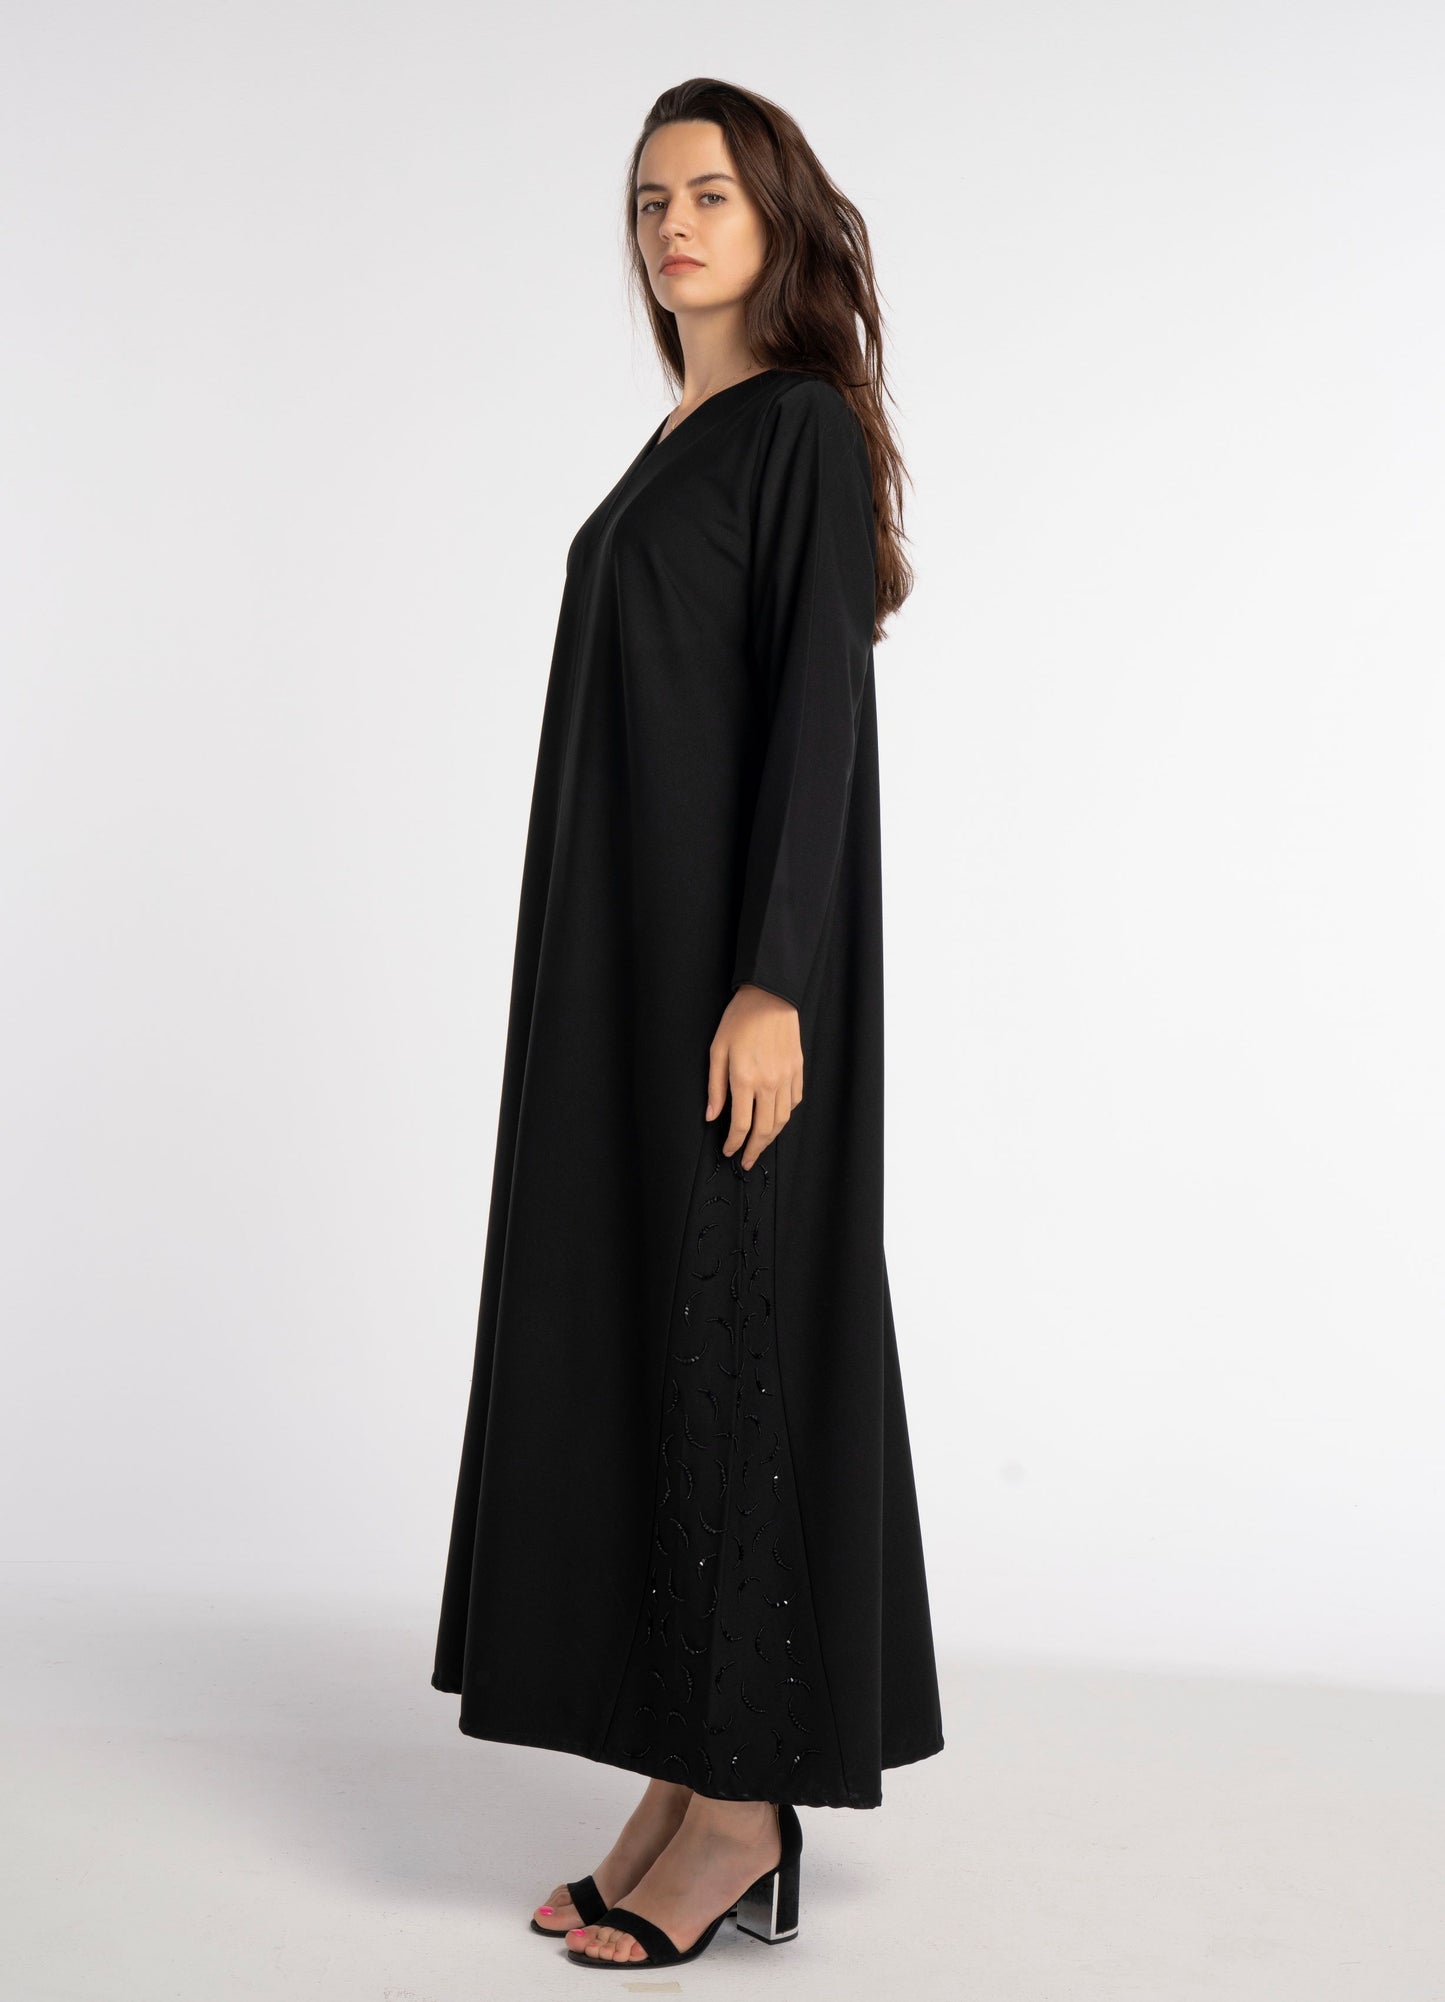 Black V-Neck Abaya with Curve-Shaped Tiny Embellishments on Sides